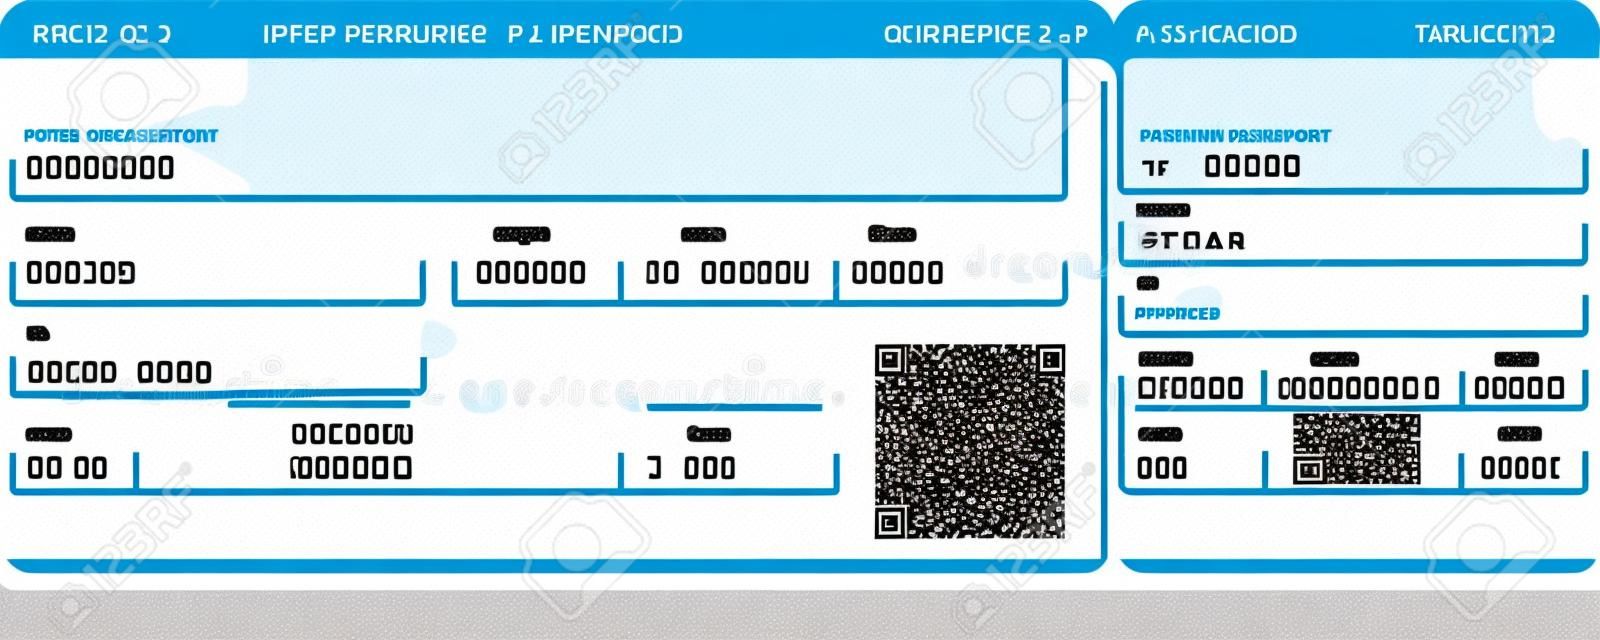 Vector immagine di compagnia aerea biglietto d'imbarco con codice QR2. Isolati su bianco. Illustrazione vettoriale